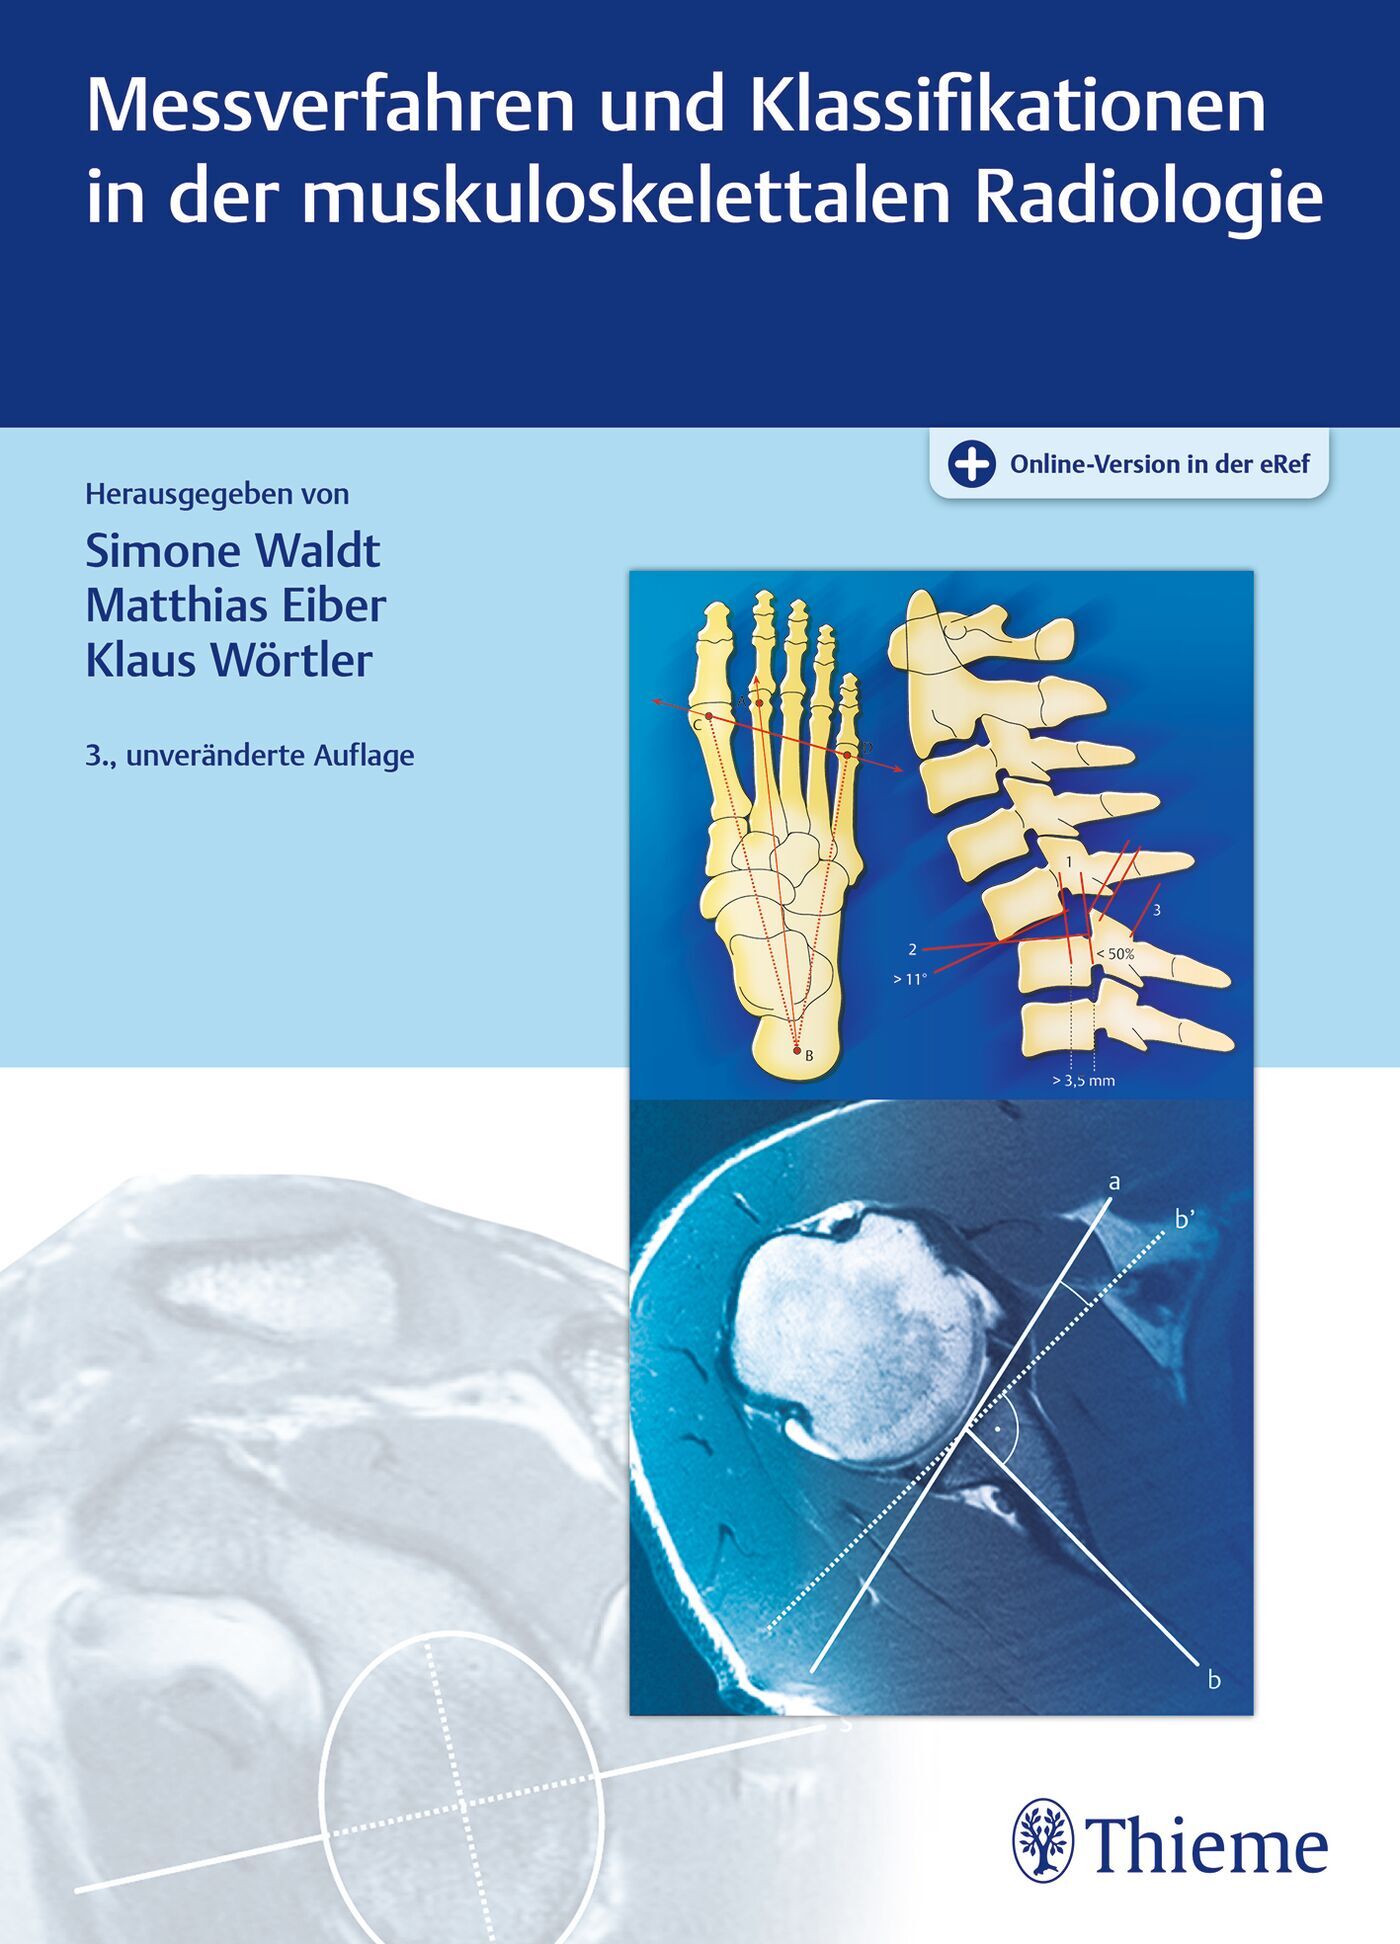 Messverfahren und Klassifikationen in der muskuloskelettalen Radiologie, 9783132454668